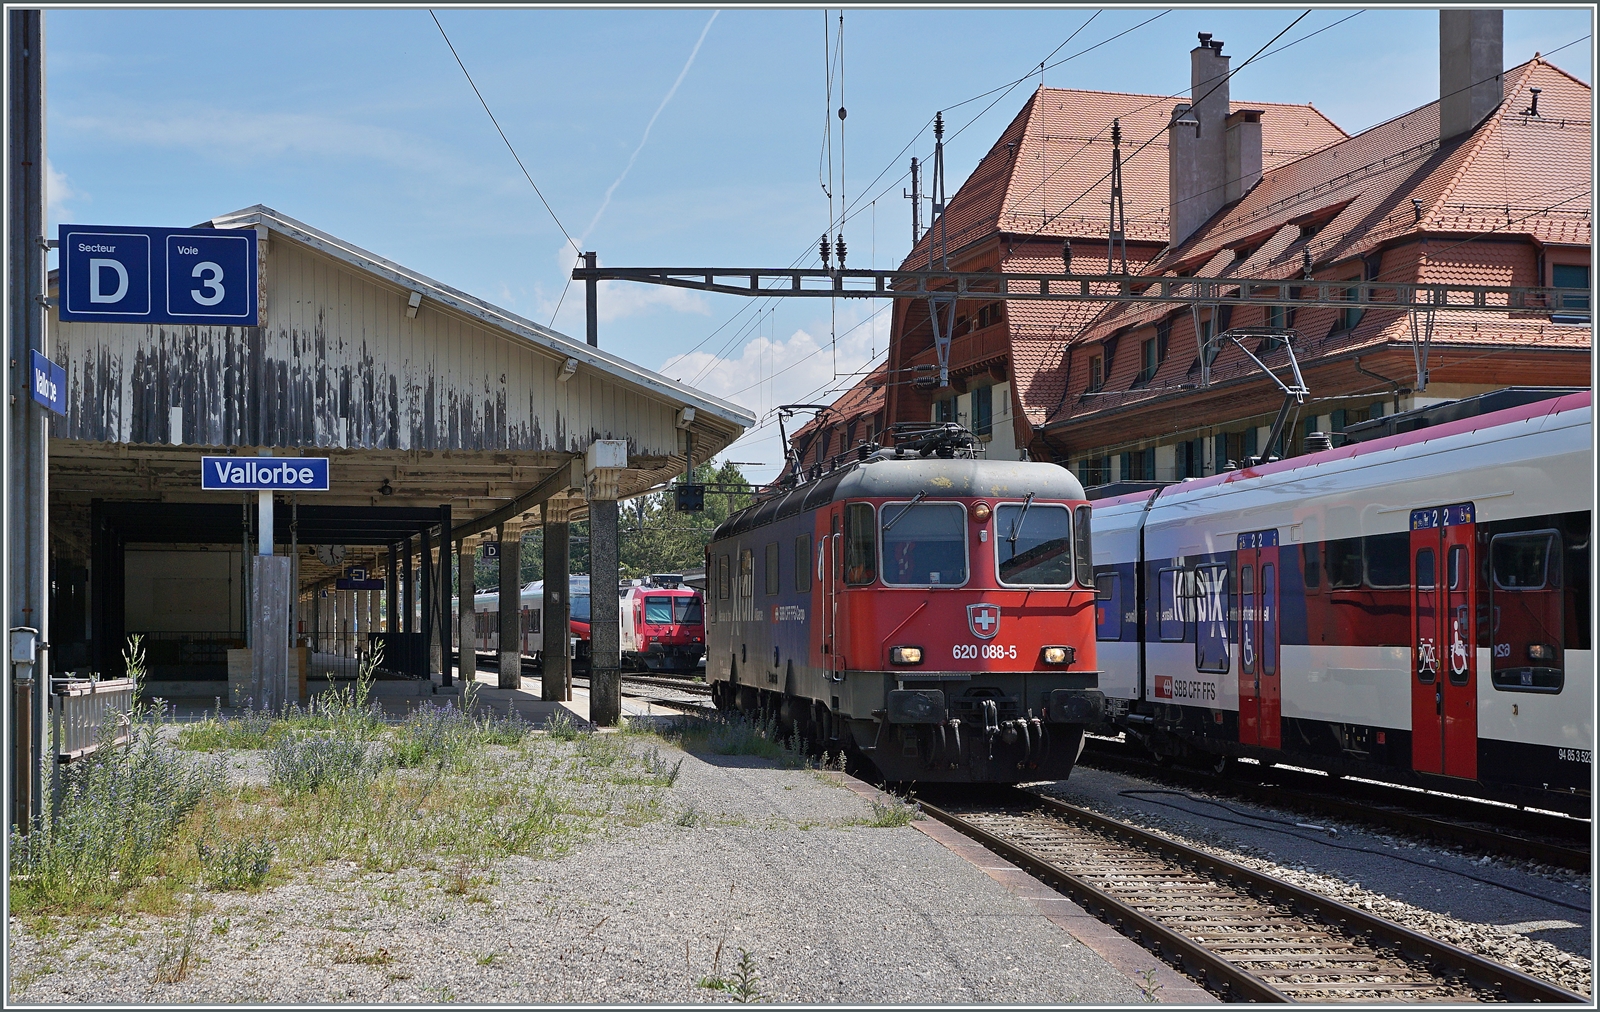 Die SBB Re 6/6 11688 (Re 620 088-5)  Linthal  war mit dem  Spaghetti -Zug von Domodossola II in Vallorbe angekommen und rangiert nun für die  Übernahme  des Gegenzugs. 

16. Juni 2022